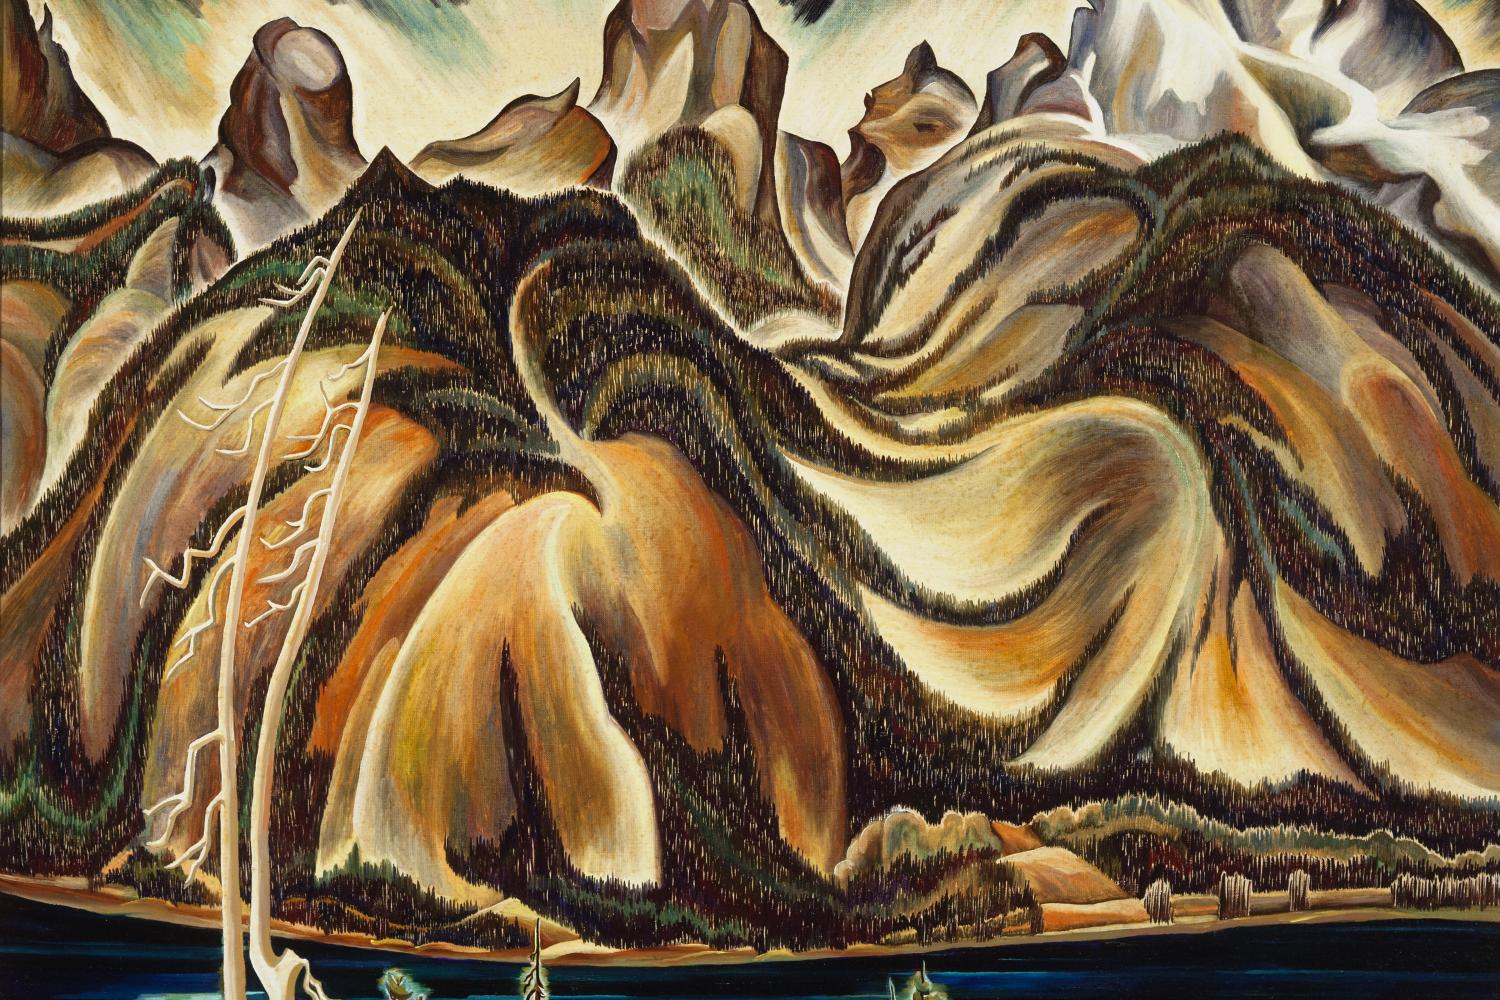 highly stylized painting of the Teton Mountain range